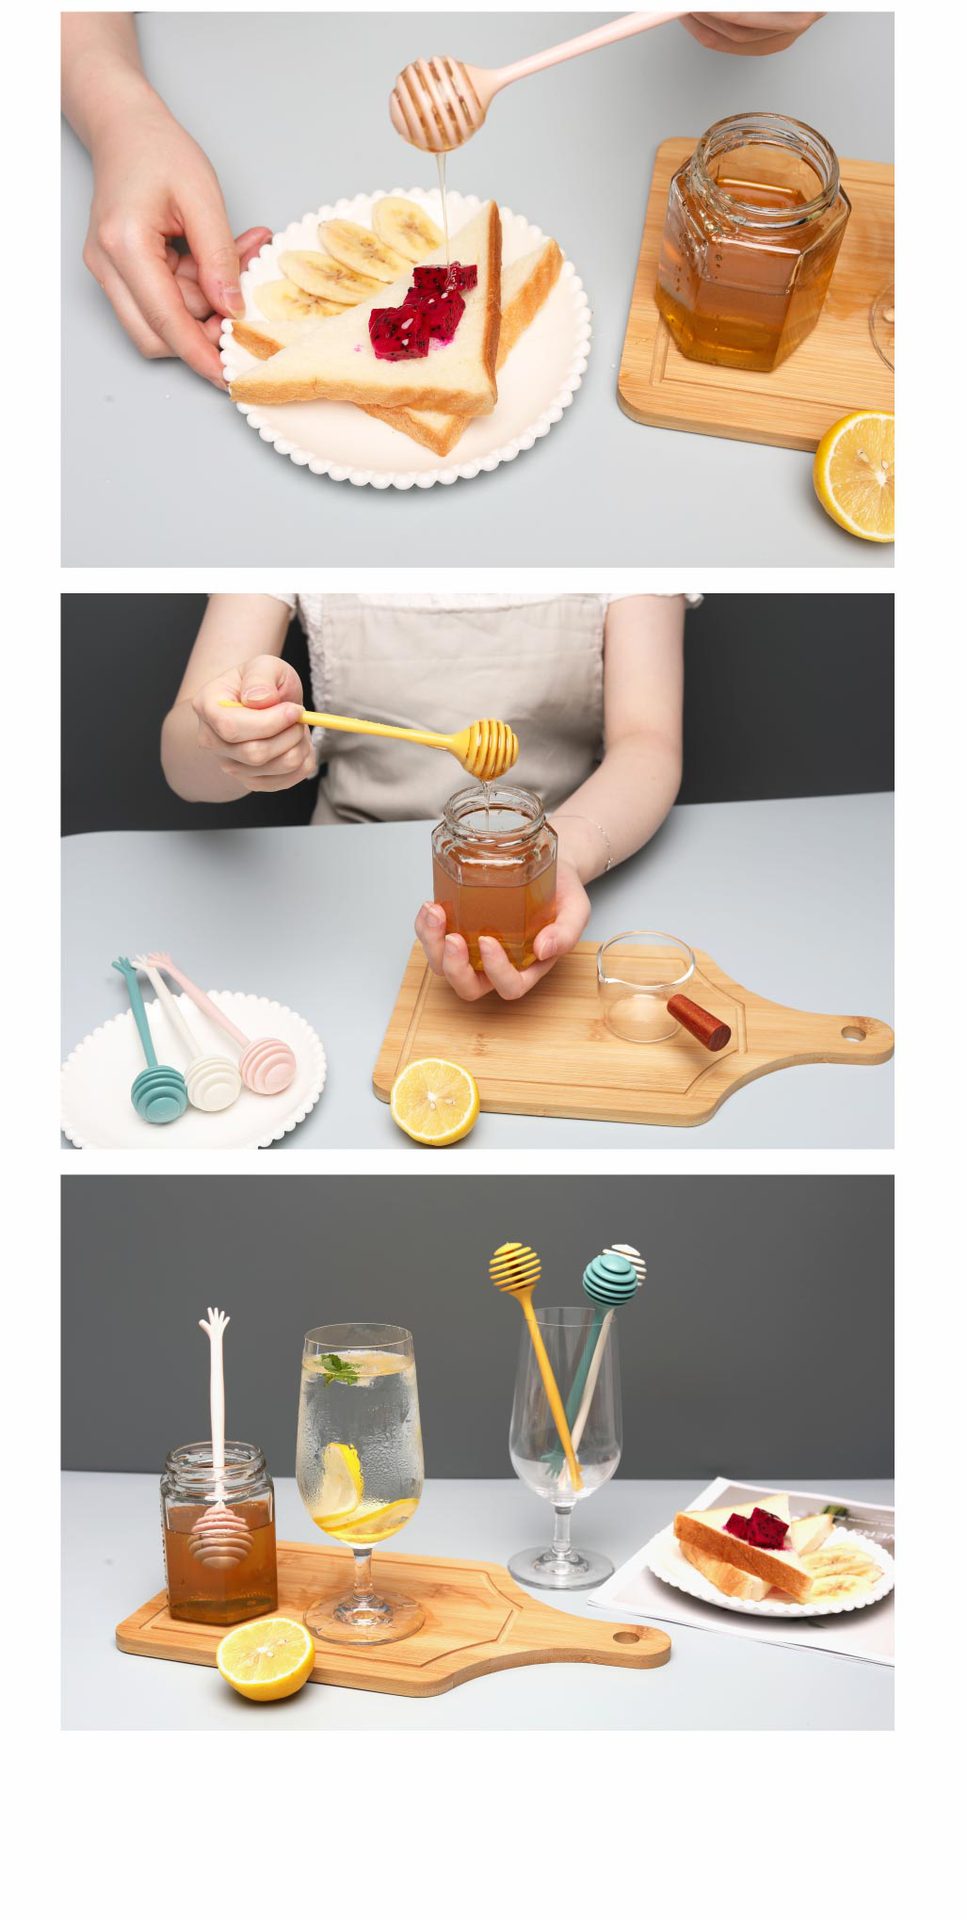 創意長柄蜂蜜攪拌棒 北歐色蜂蜜攪拌器 手掌造型長柄攪拌棒